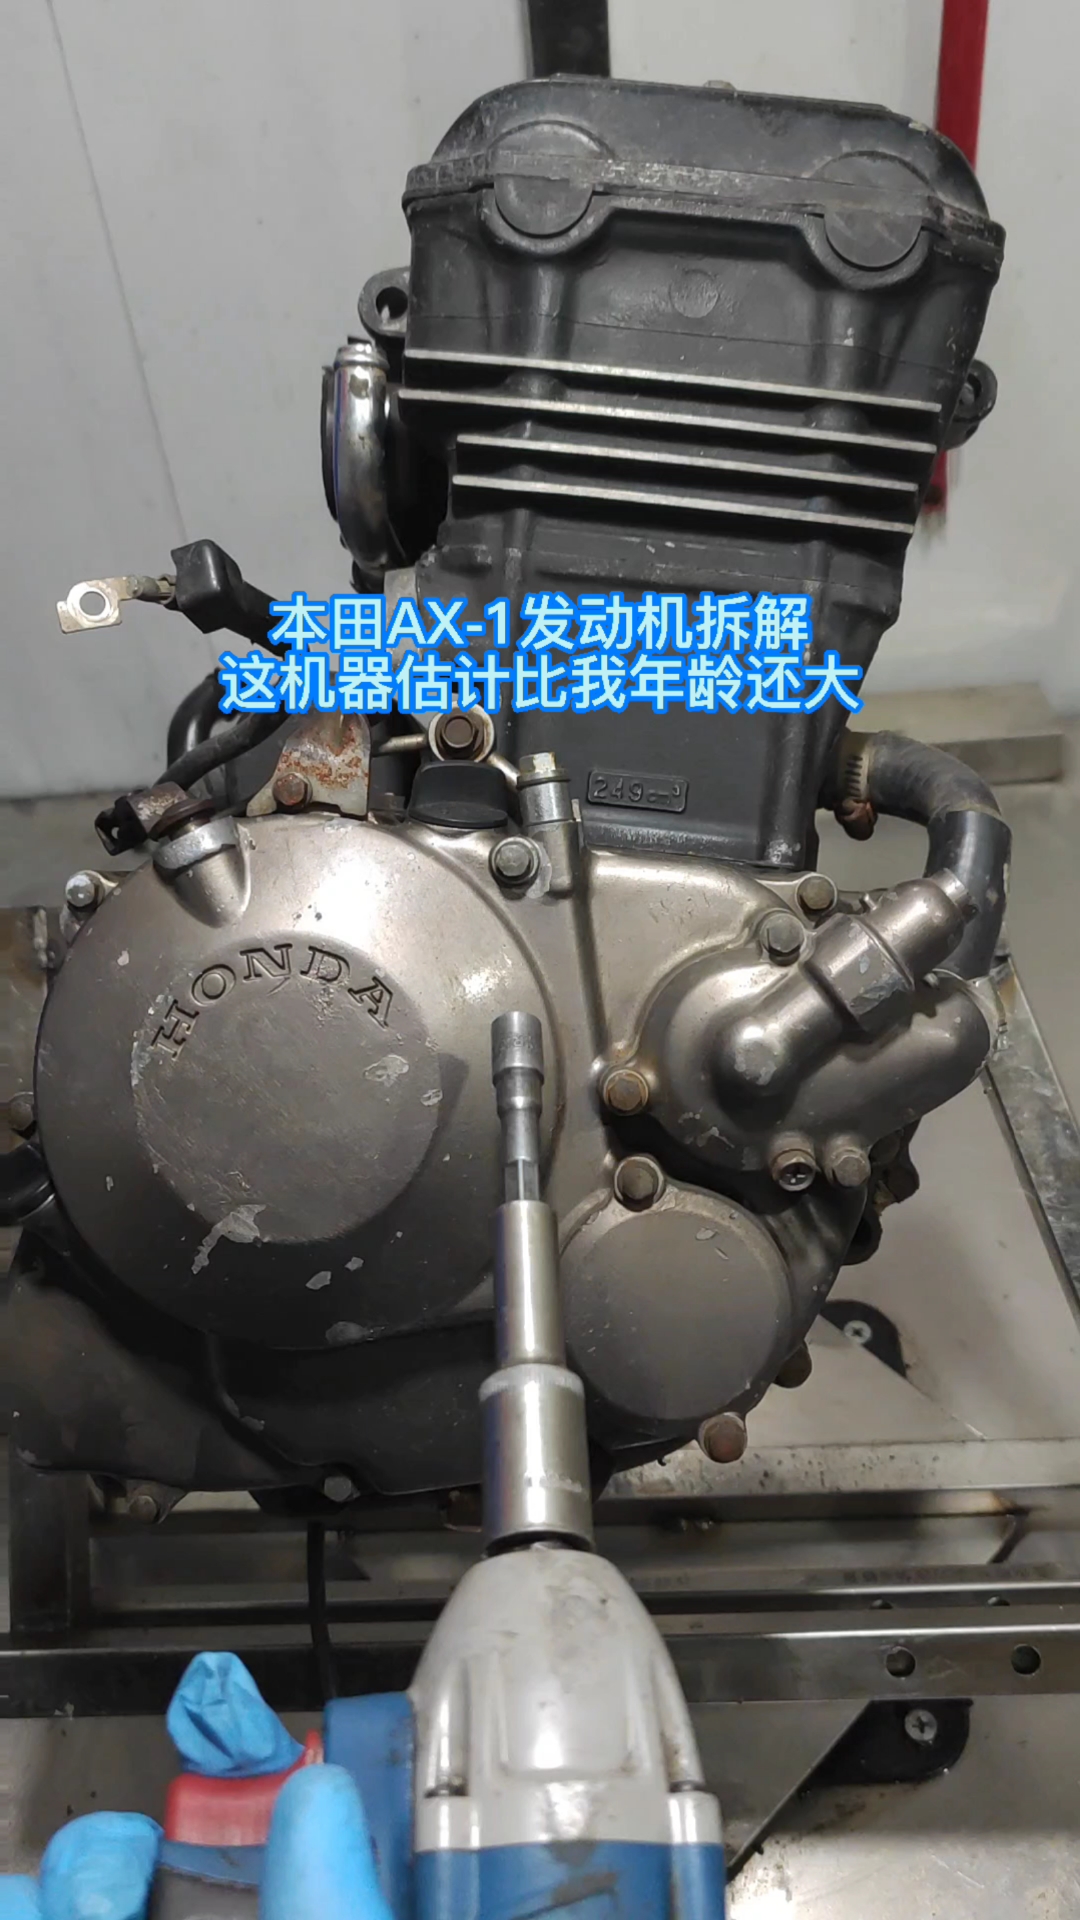 机车本田ax1摩托车发动机拆解检查过程